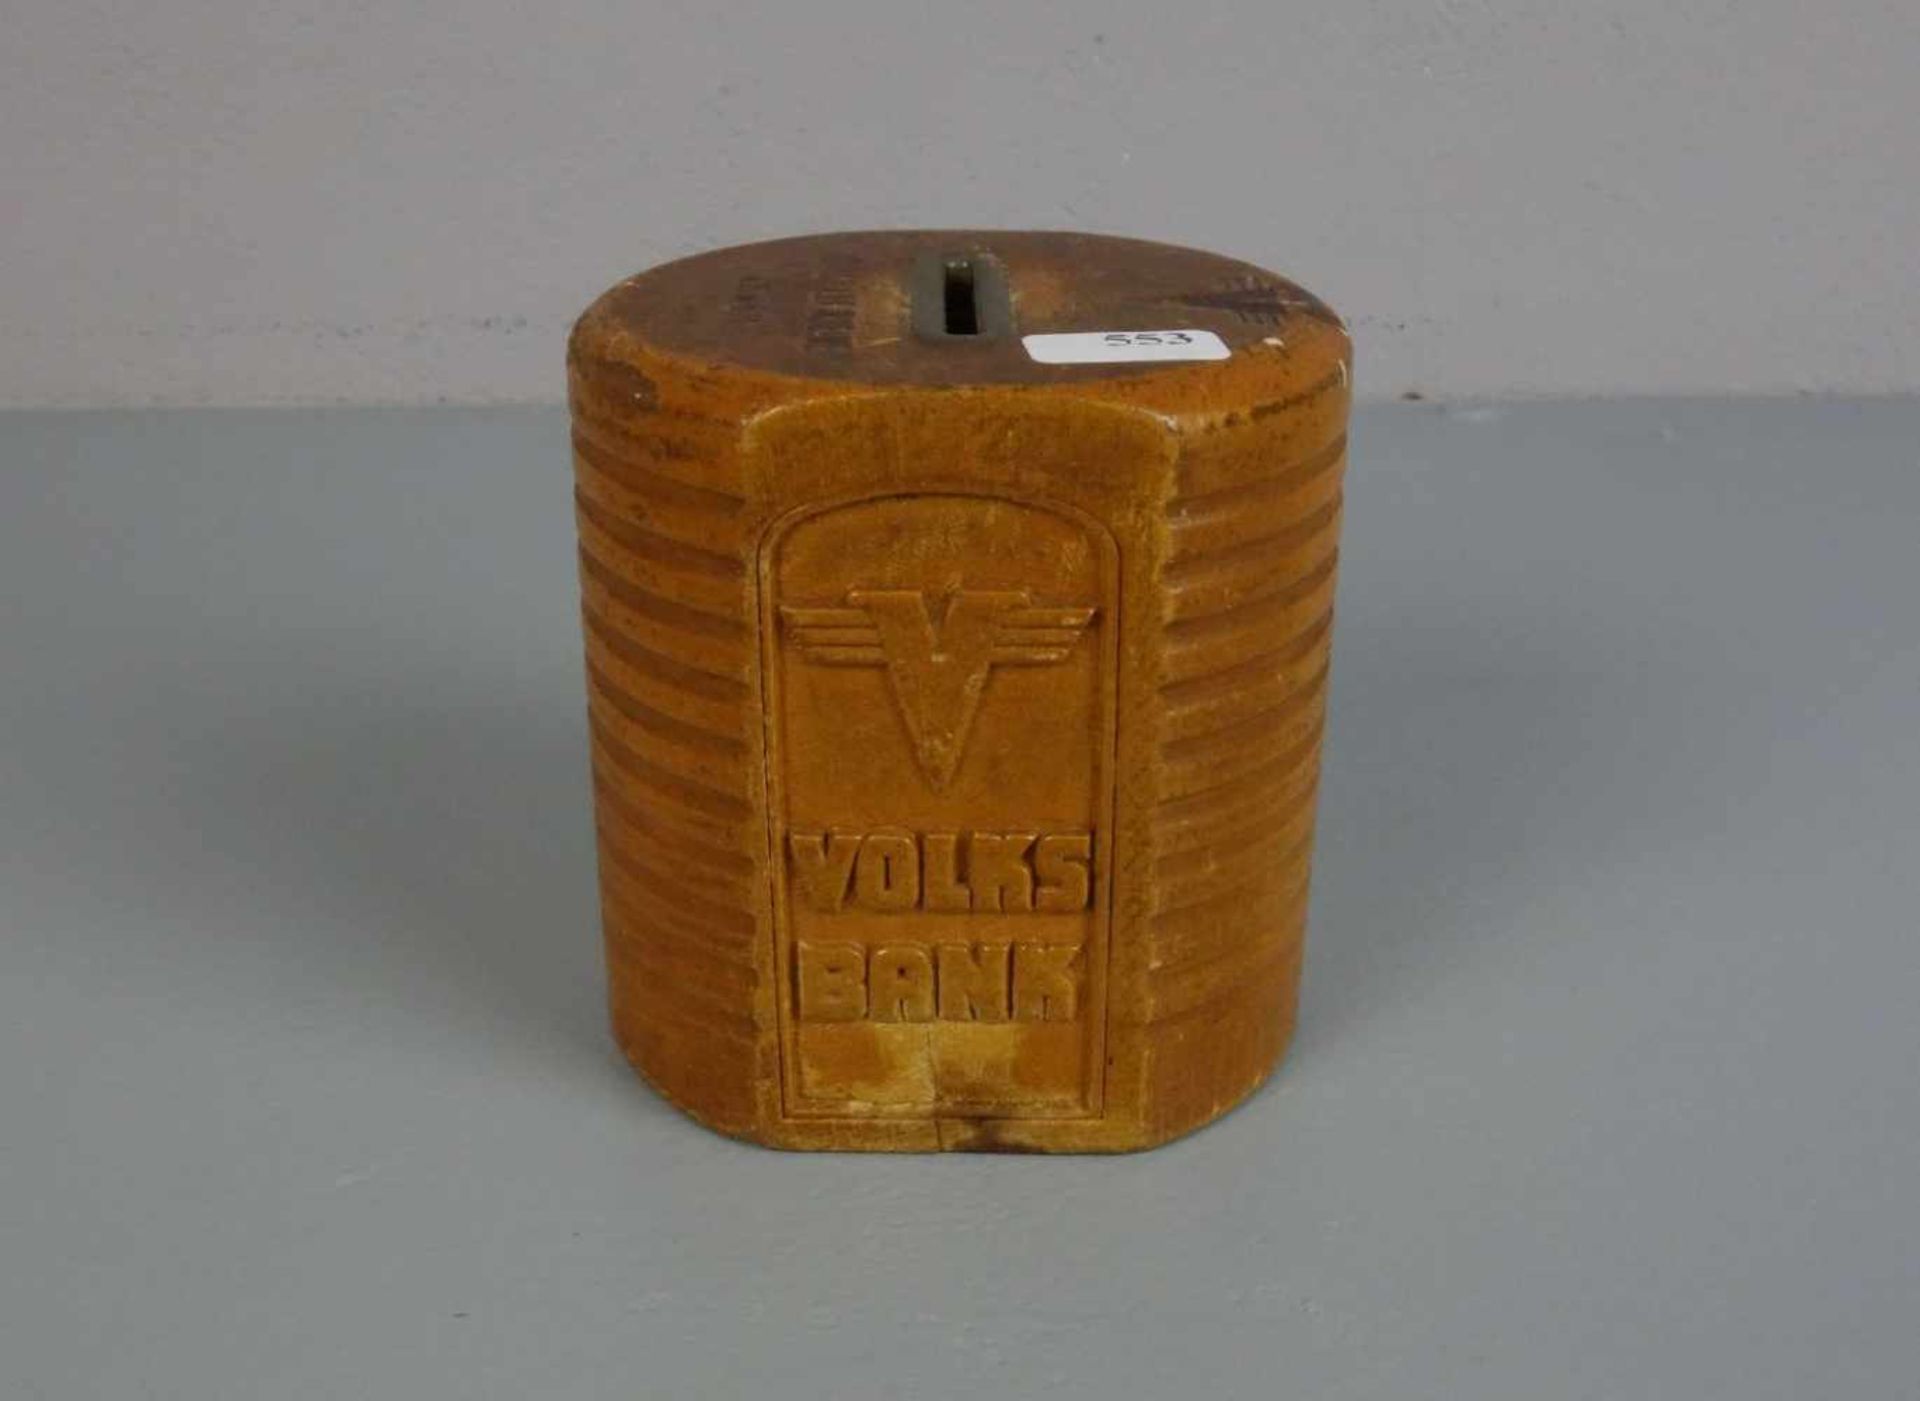 SPARDOSE / moneybox, "Volksbank Rheine", gearbeitet in Form eines Bienenkorbes; Holz, geschnitzt und